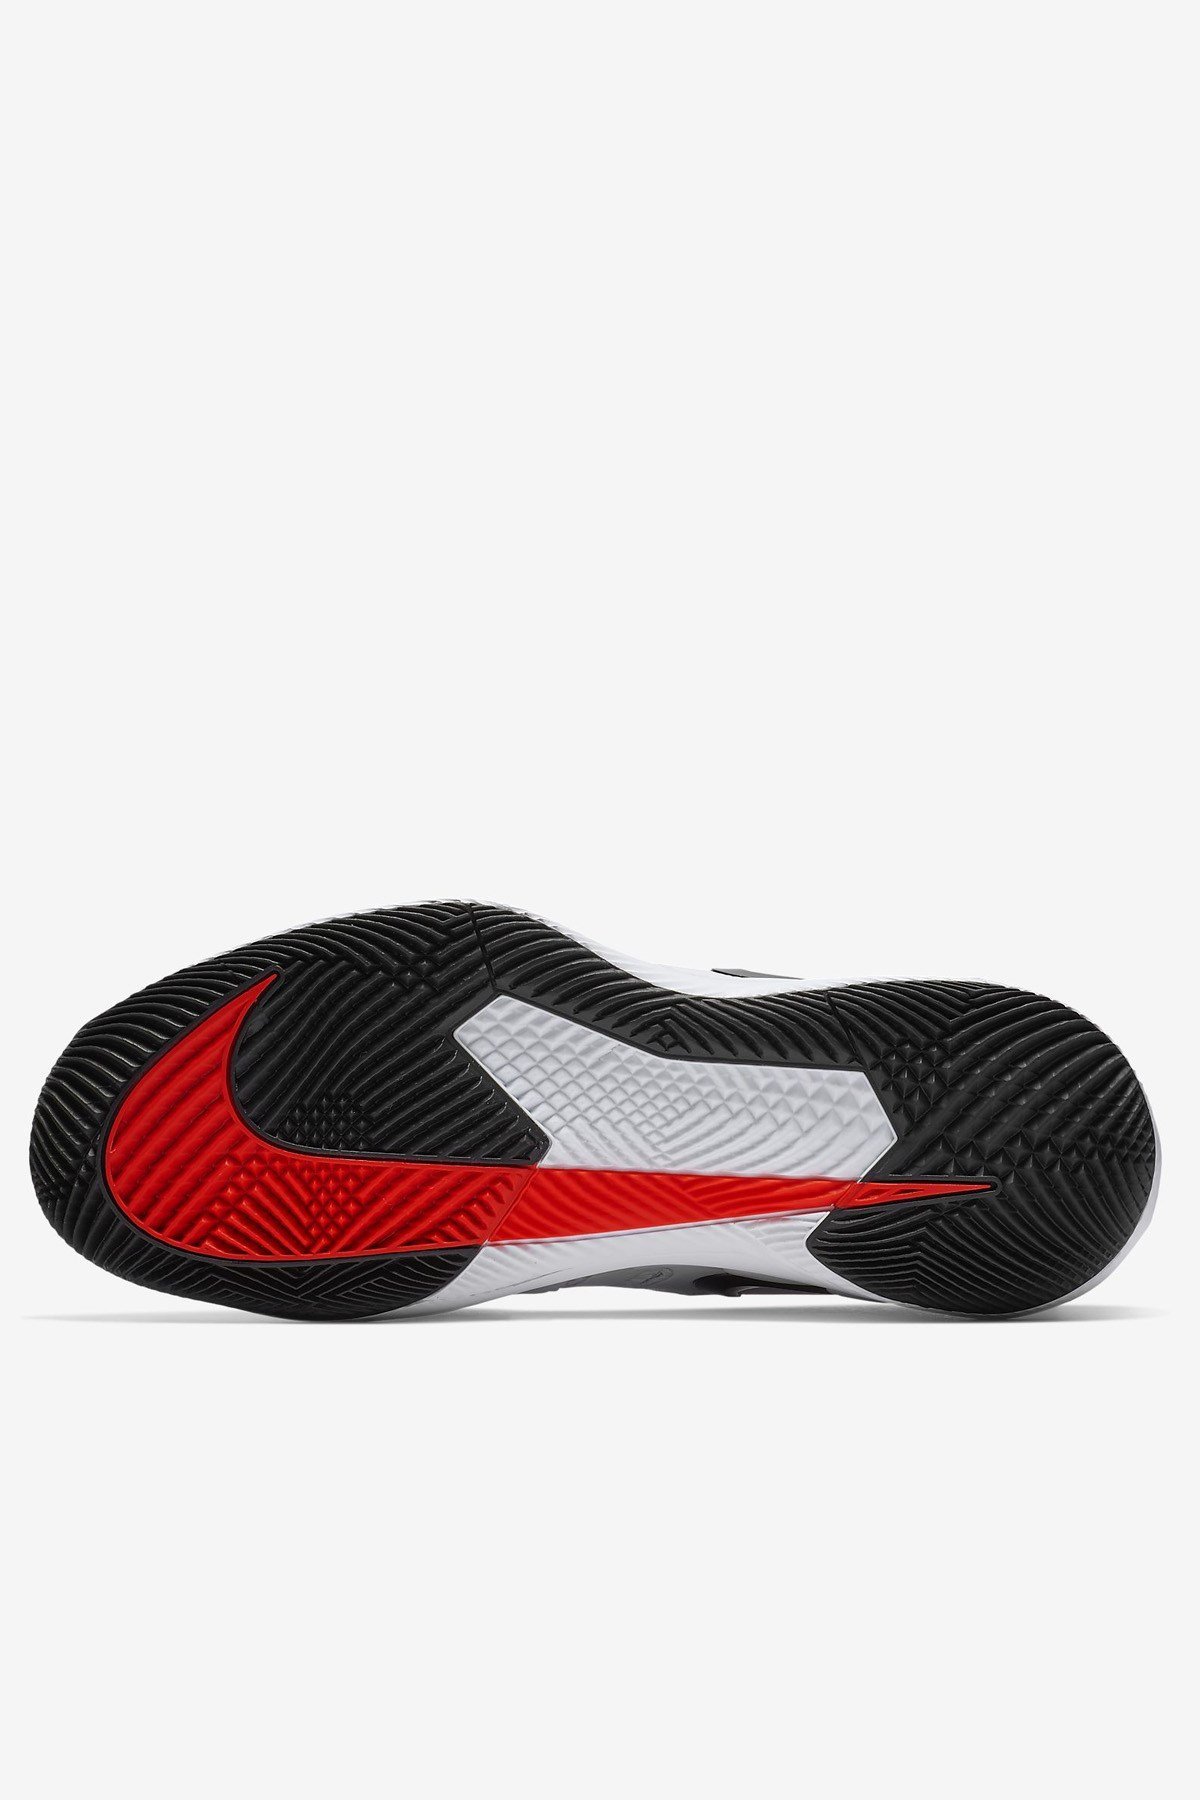 Nike Air Zoom Vapor X HC Beyaz Erkek Tenis Ayakkabısı